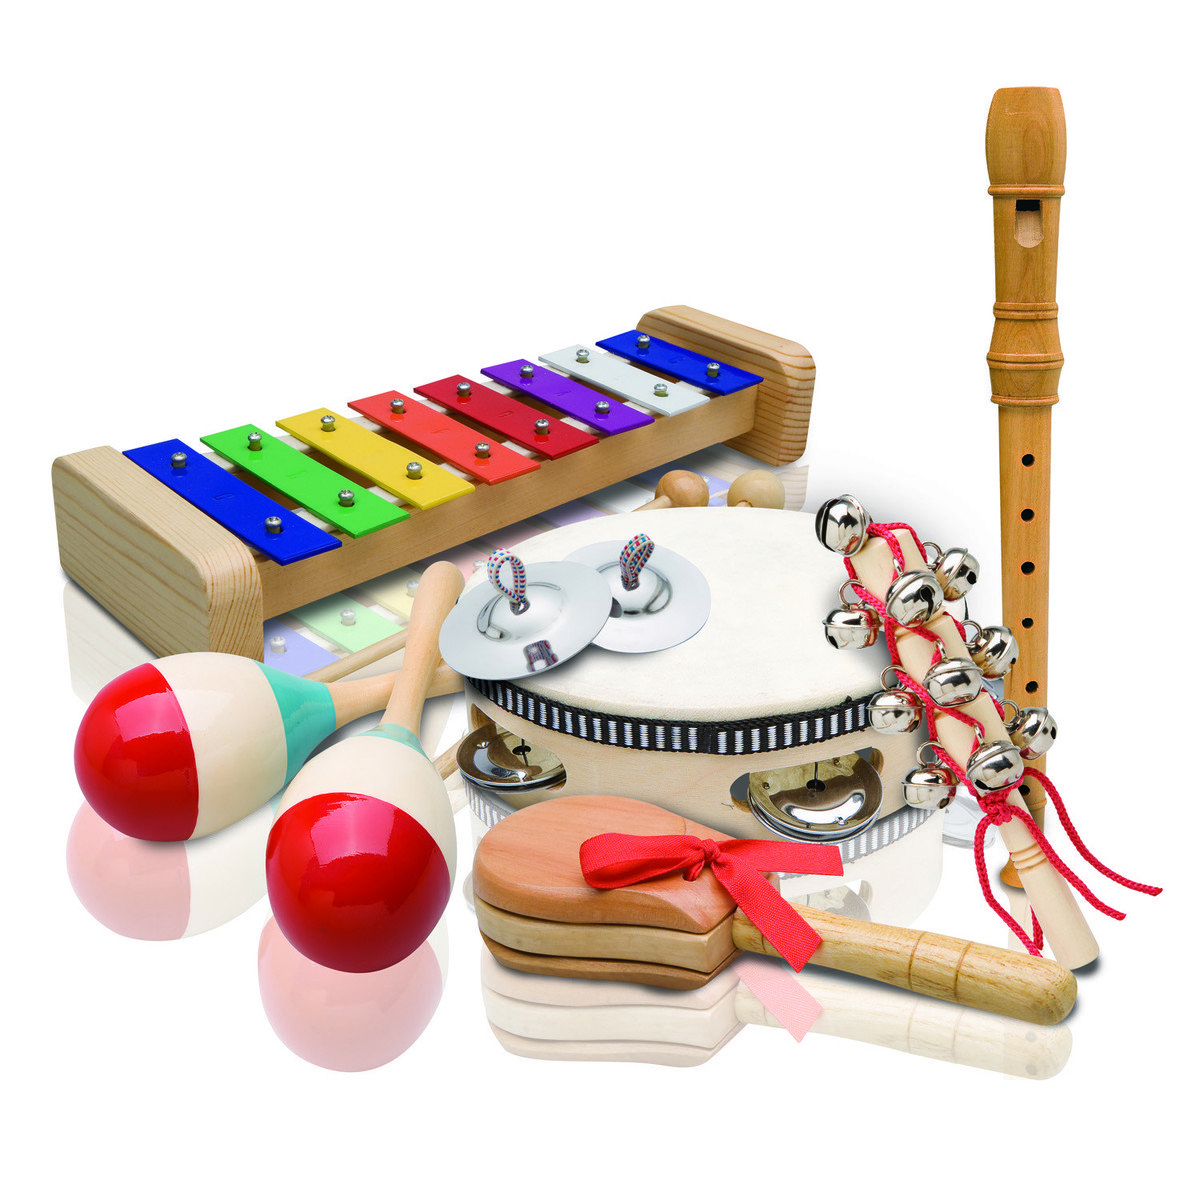 Музыкальная игра купить. Ashton pset4. Набор музыкальный. Детские музыкальные инструменты. Шумовые музыкальные инструменты. Музыкальные игрушки для дошкольников.